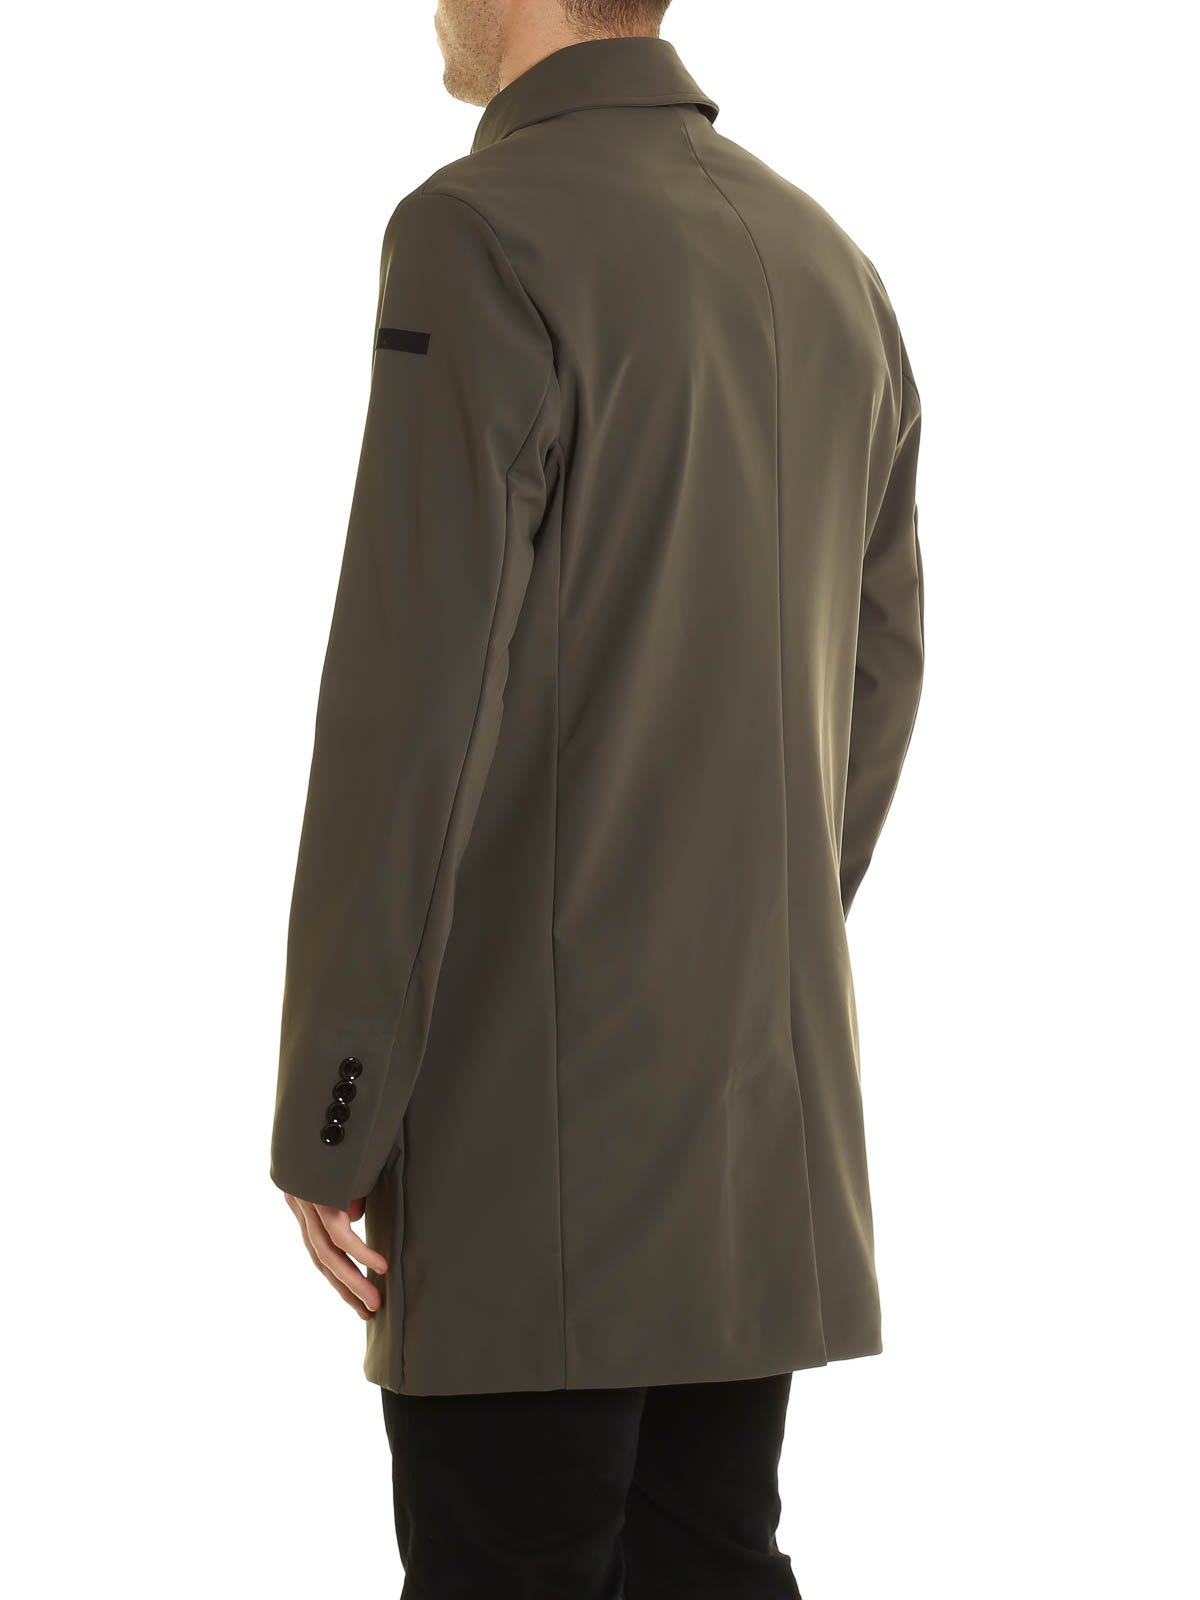 Short coats RRD Roberto Ricci Designs - Summer waterproof coat - 1720421